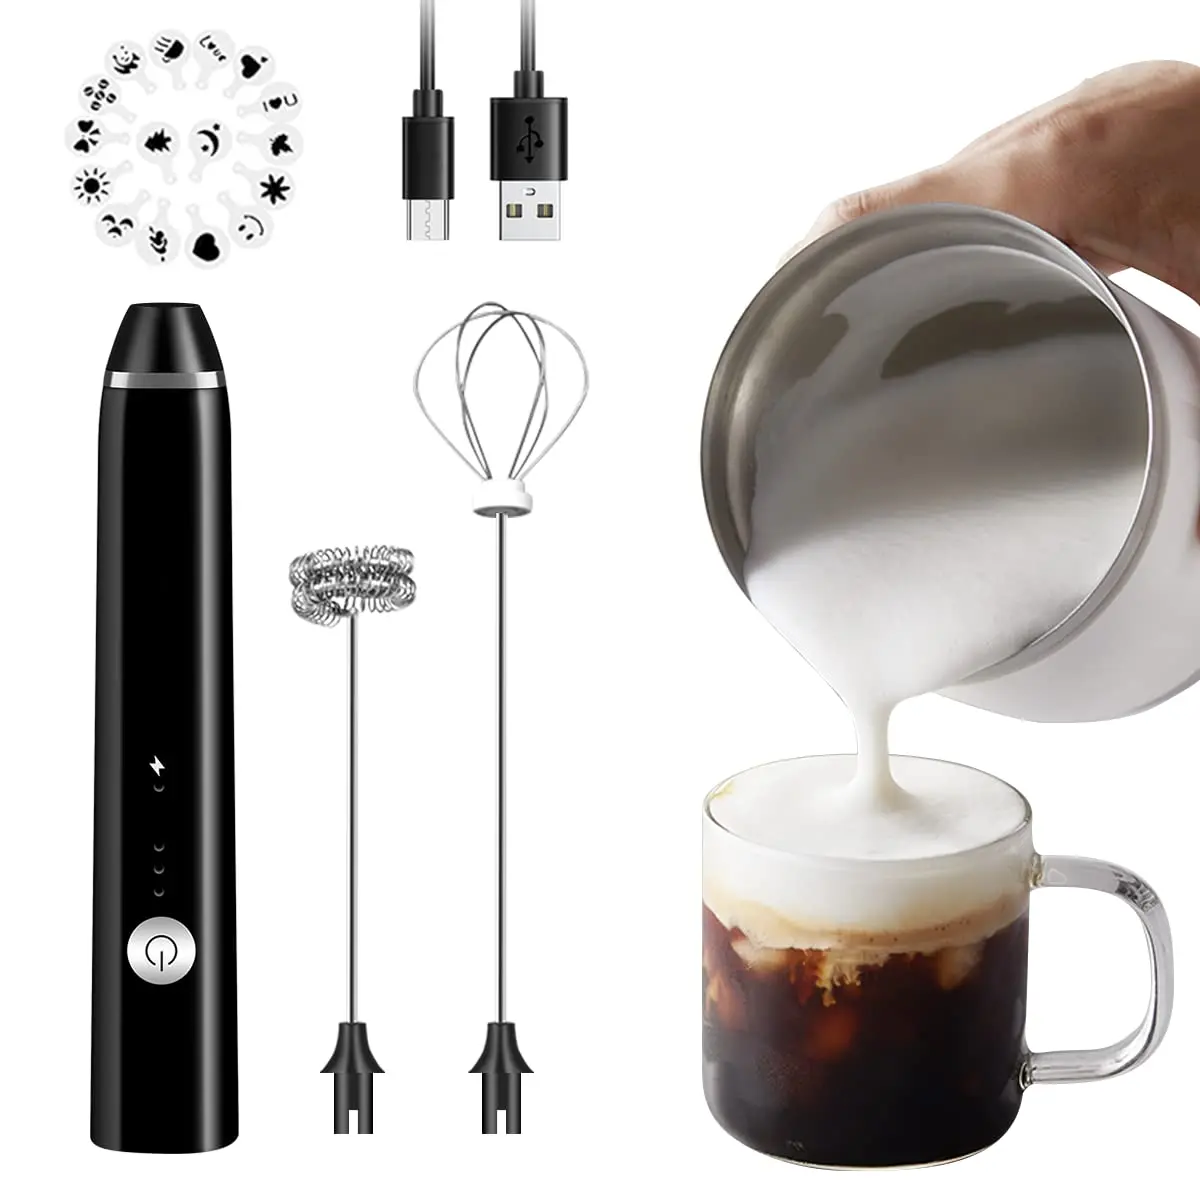 batidor de cafe a pilas - Qué tipo de pilas usa el batidor de café